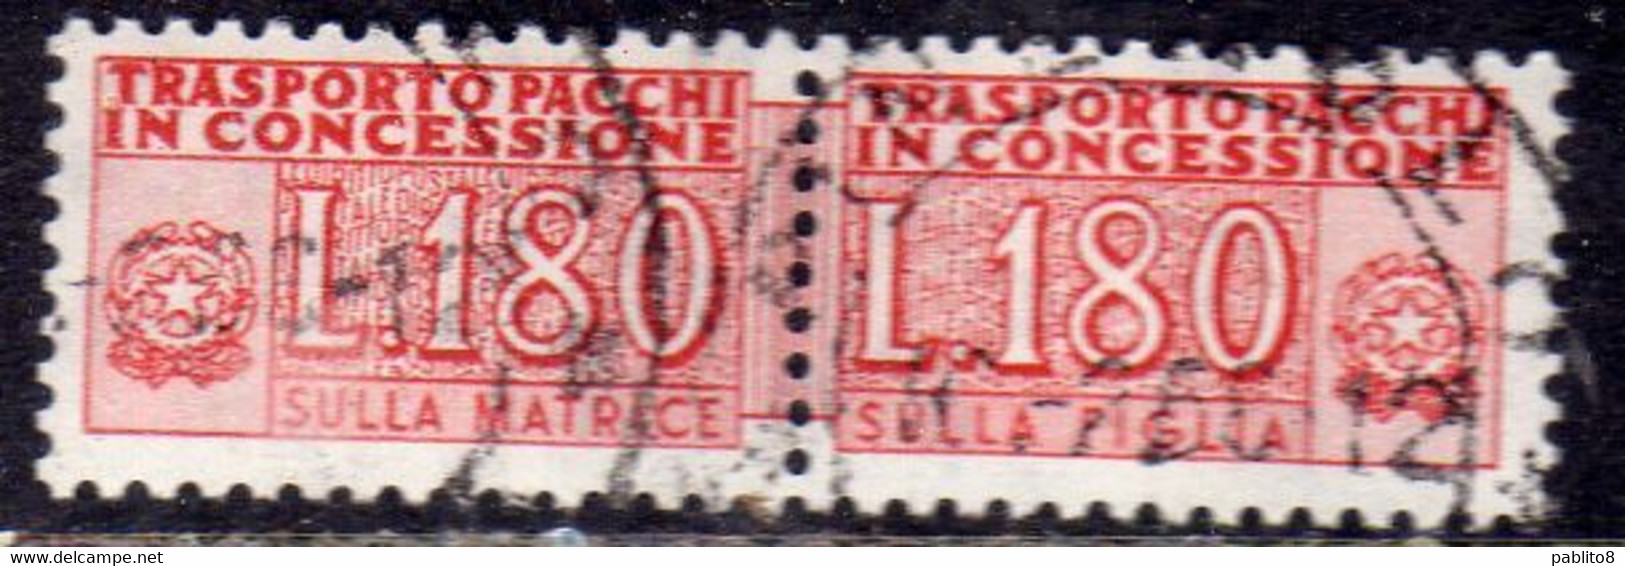 ITALIA REPUBBLICA ITALY REPUBLIC 1955 1981 PACCHI IN CONCESSIONE PARCEL POST STELLE STARS 1966 LIRE 180 USATO USED OBLIT - Concessiepaketten